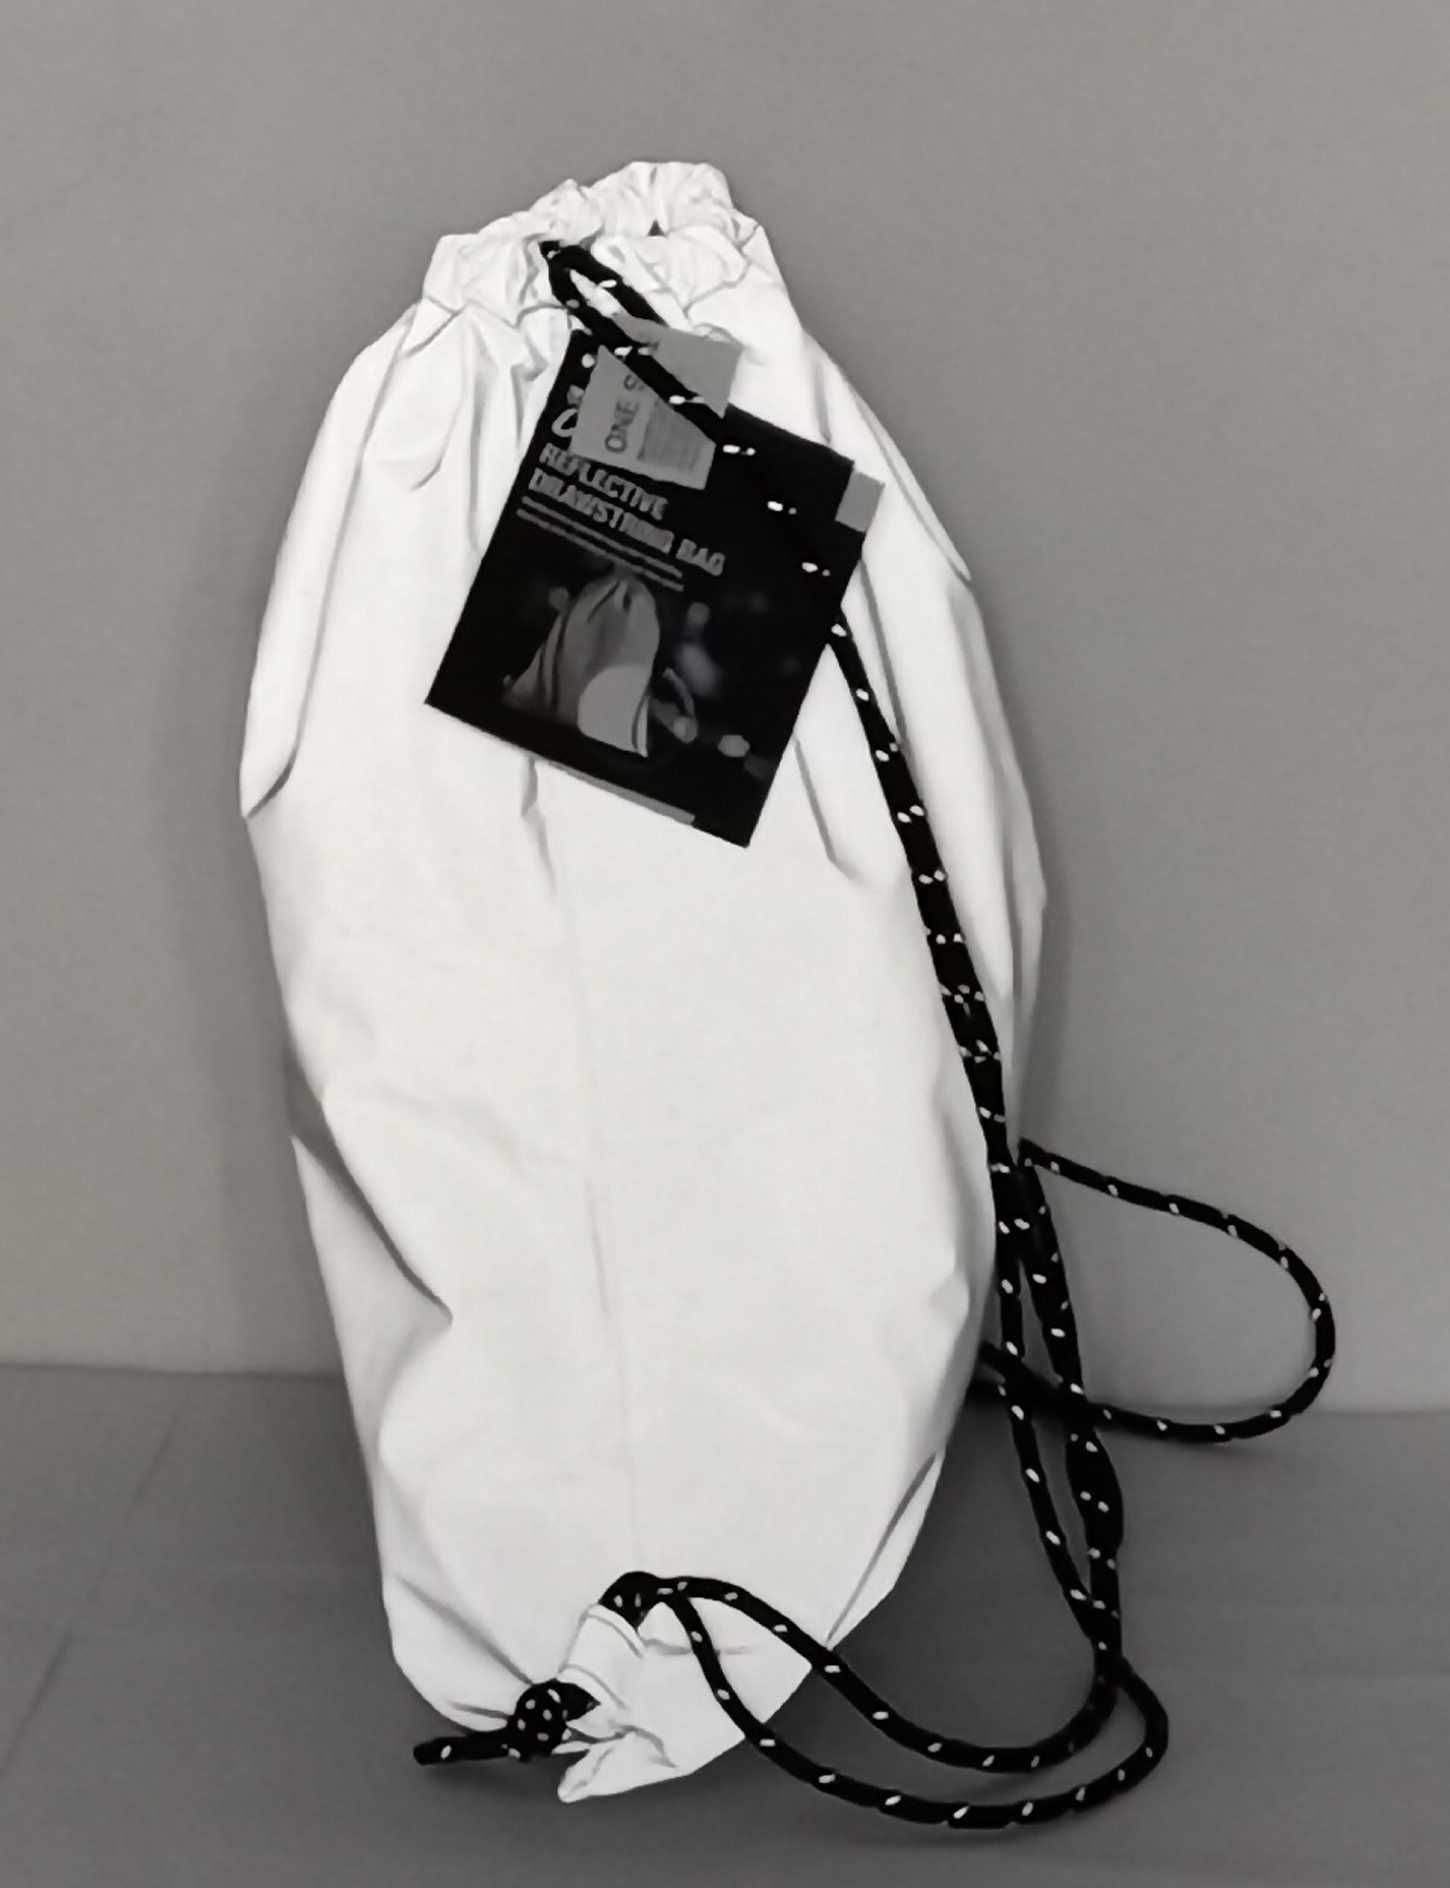 Rucsac reflectorizant geanta sport pt spate bretele reglabile snur